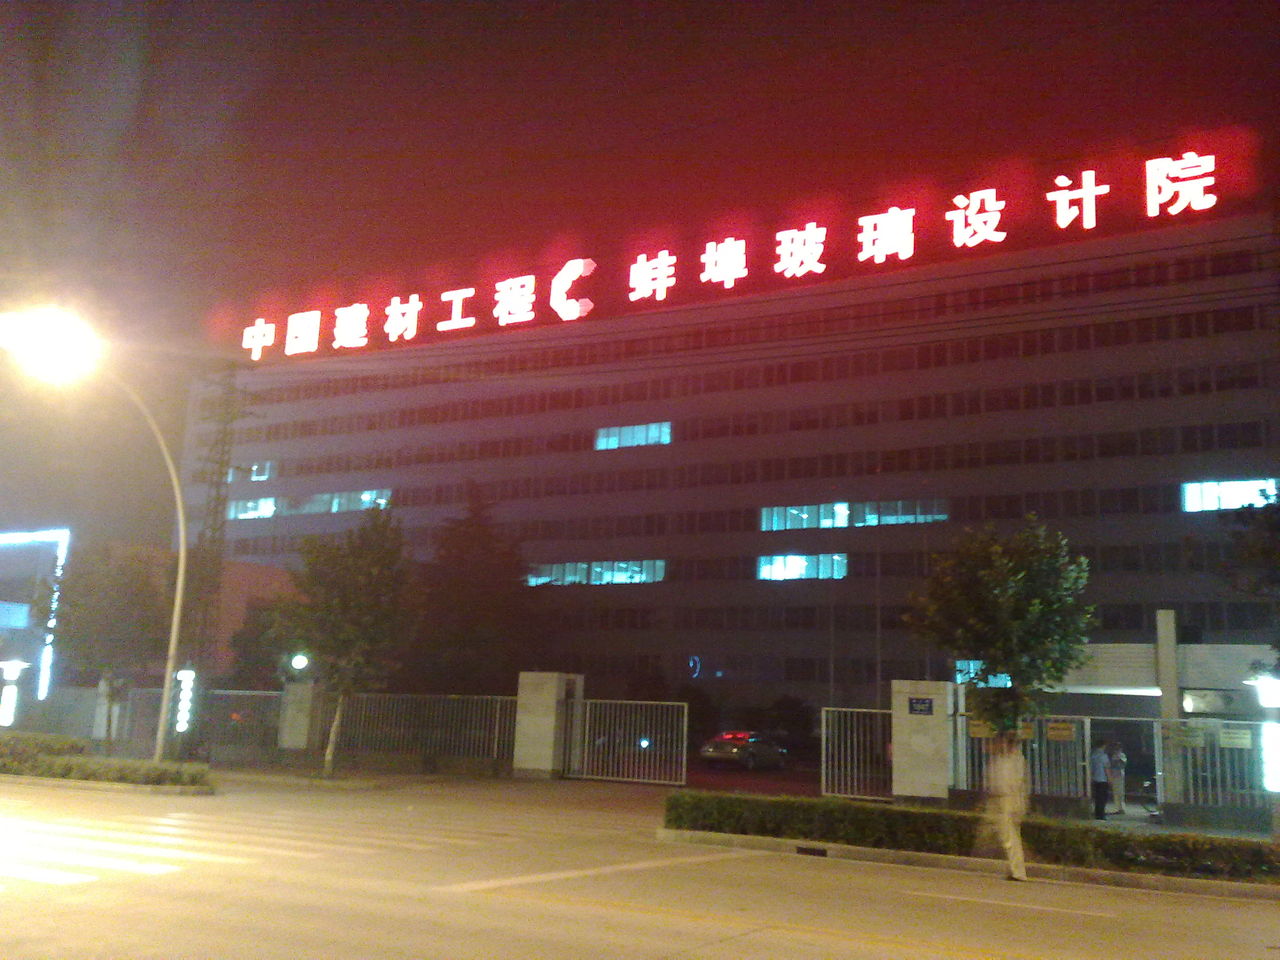 蚌埠玻璃工業設計研究院